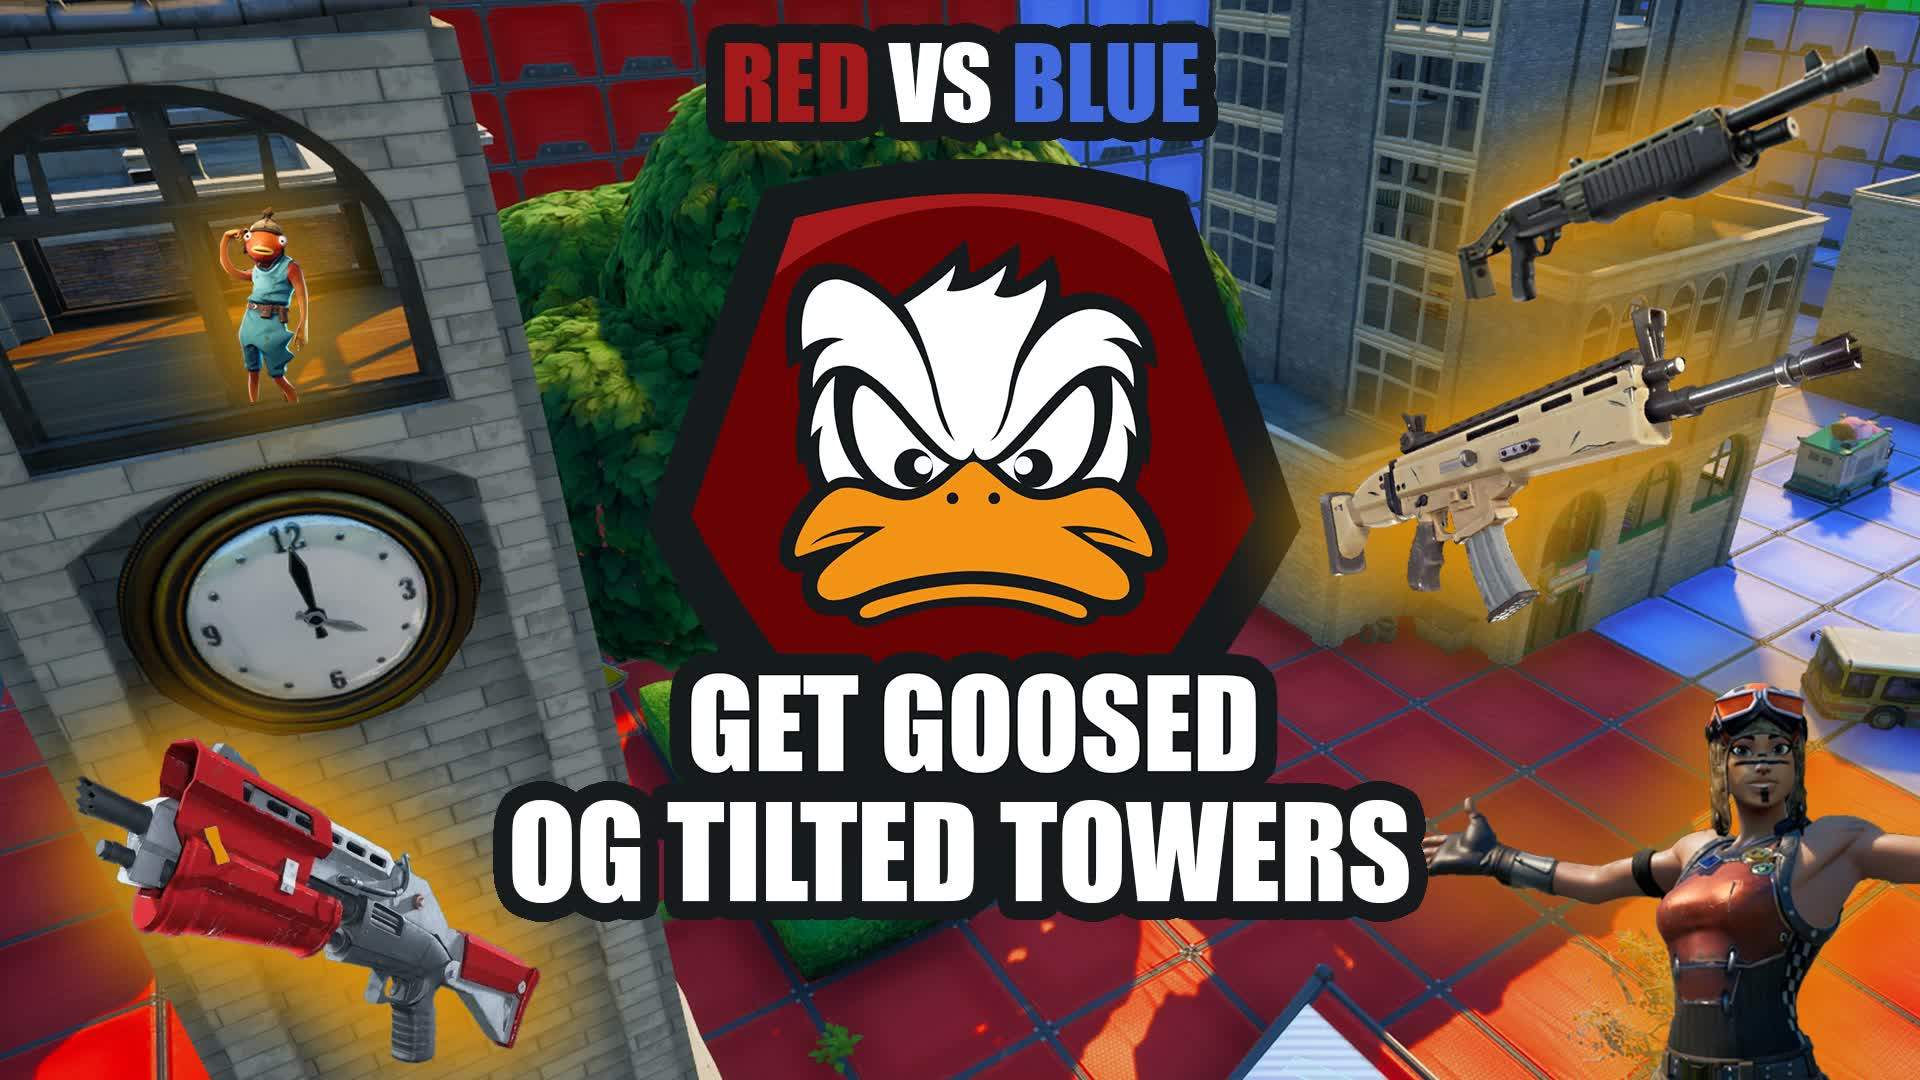 RED VS BLUE TILTED TOWERS OG GET GOOSED